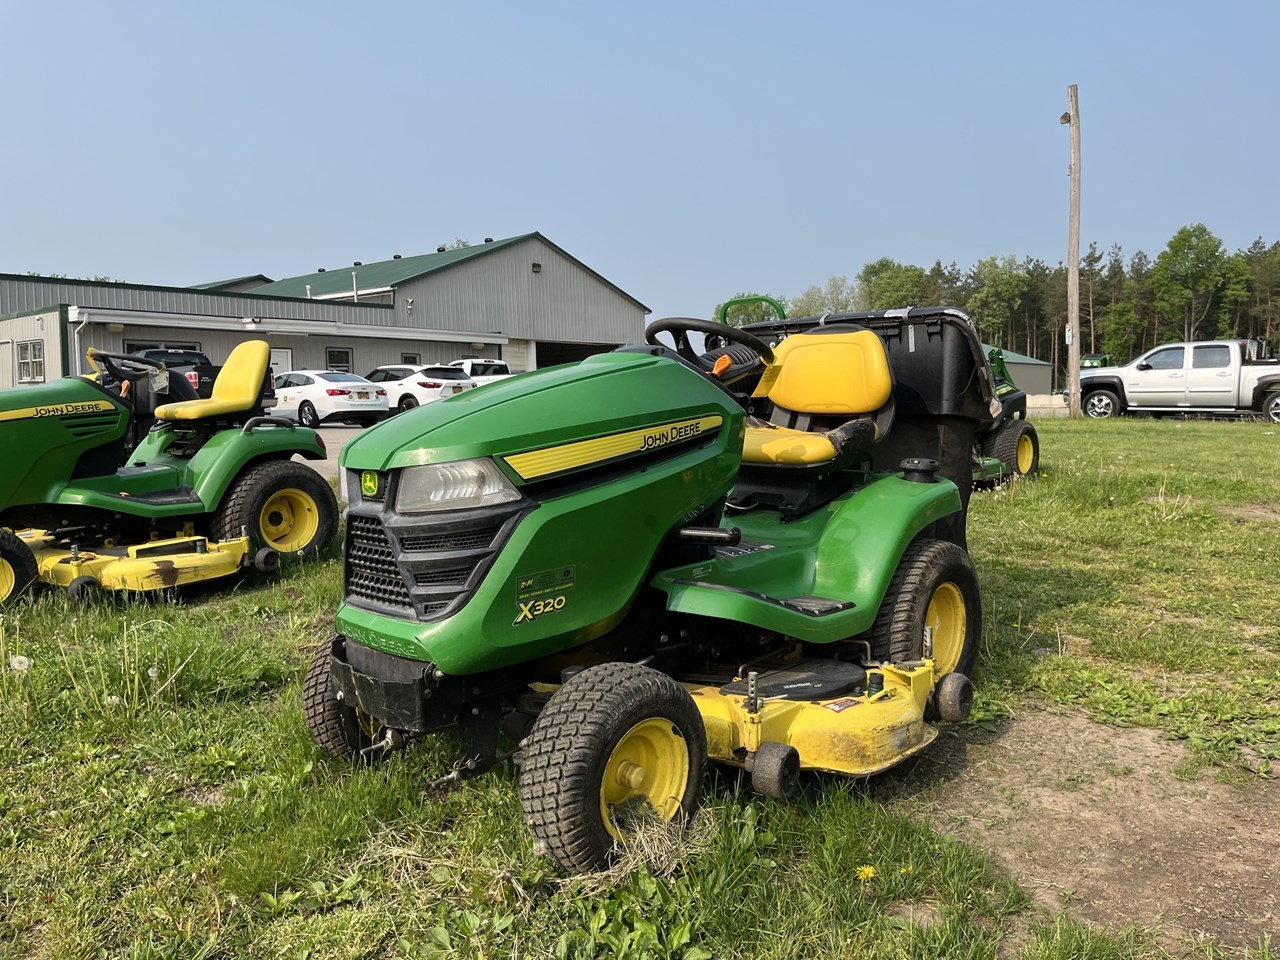 2014 John Deere X320 Lawn Mower For Sale